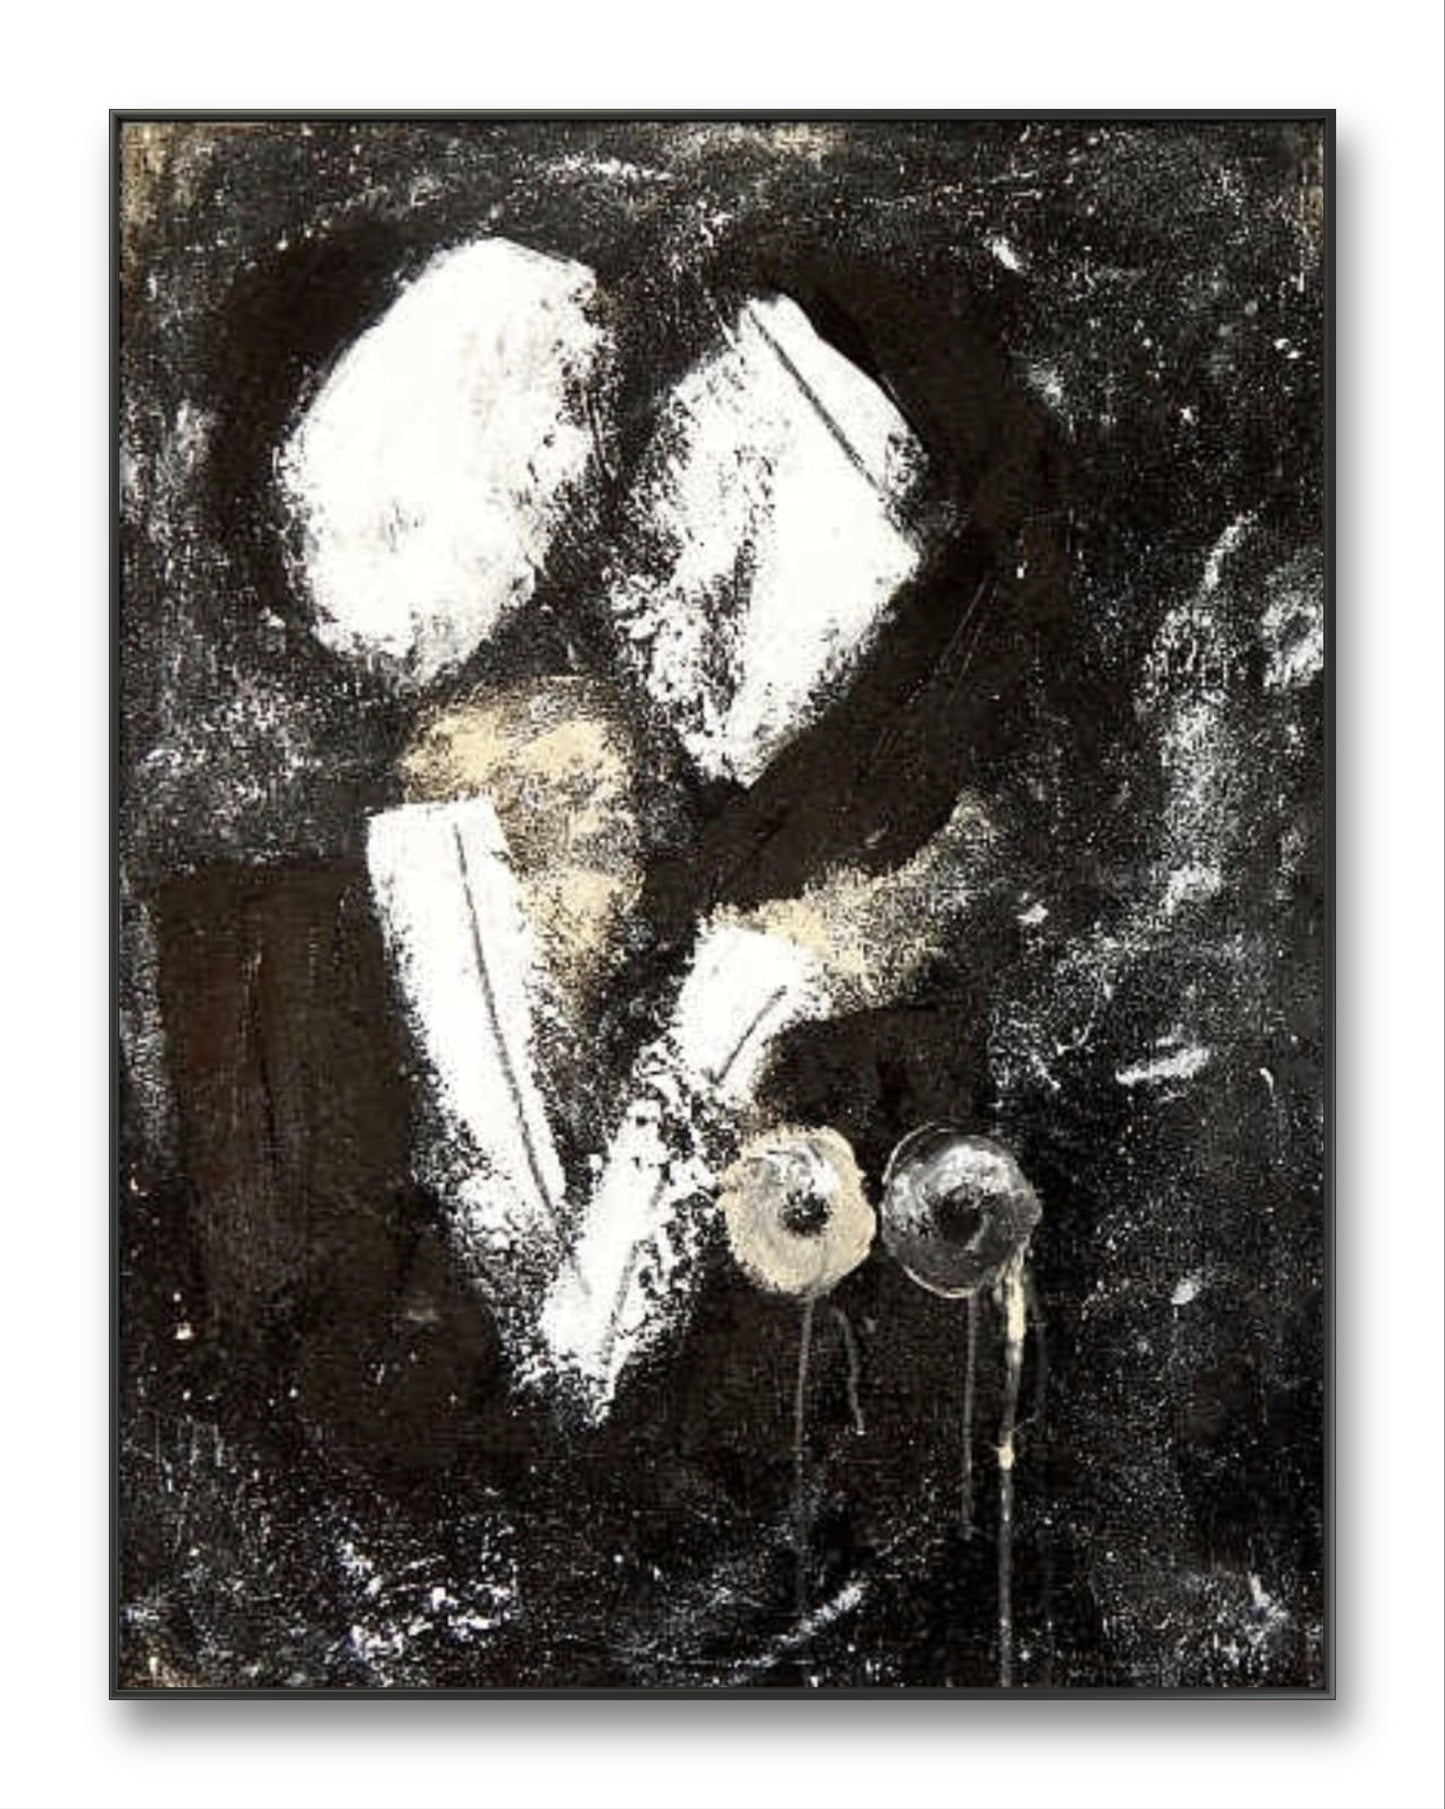 Schwarz-weiße Hommage: Kunstwerk reflektiert die Tiefe menschlicher Beziehungen,#AbstrakteKunstwerk #KunstInBildern #Kunstmalerei #KreativKunst #Künstlerleben #Kunstliebhaber #Künstleratelier #BilderKunst #Kunstwerk2024 #ModerneKunst abstrakte Bilder kaufen ,